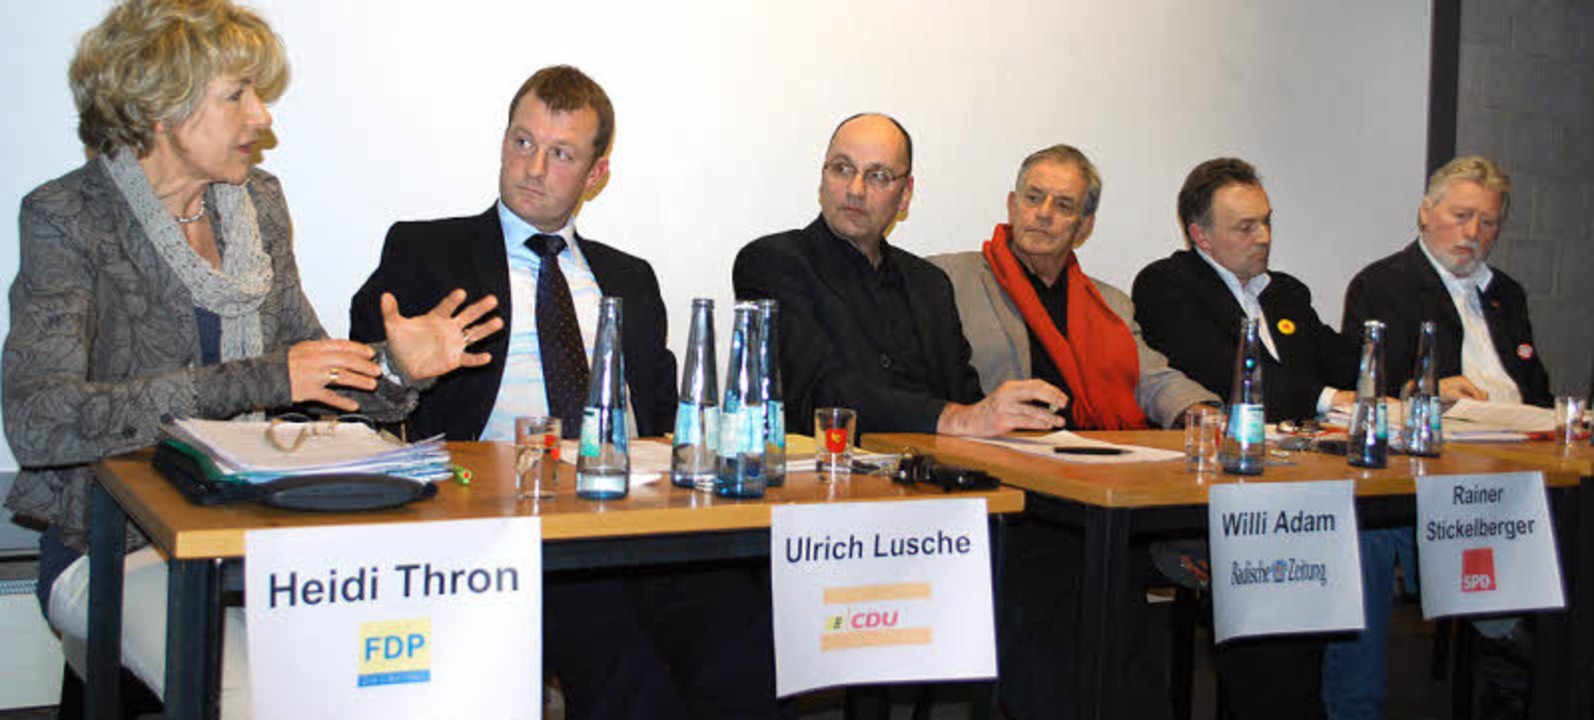 Heidi Thron (FDP), Ulrich Lusche (CDU)... Frey (Grüne) und Günter Gent Linke).   | Foto: Mink